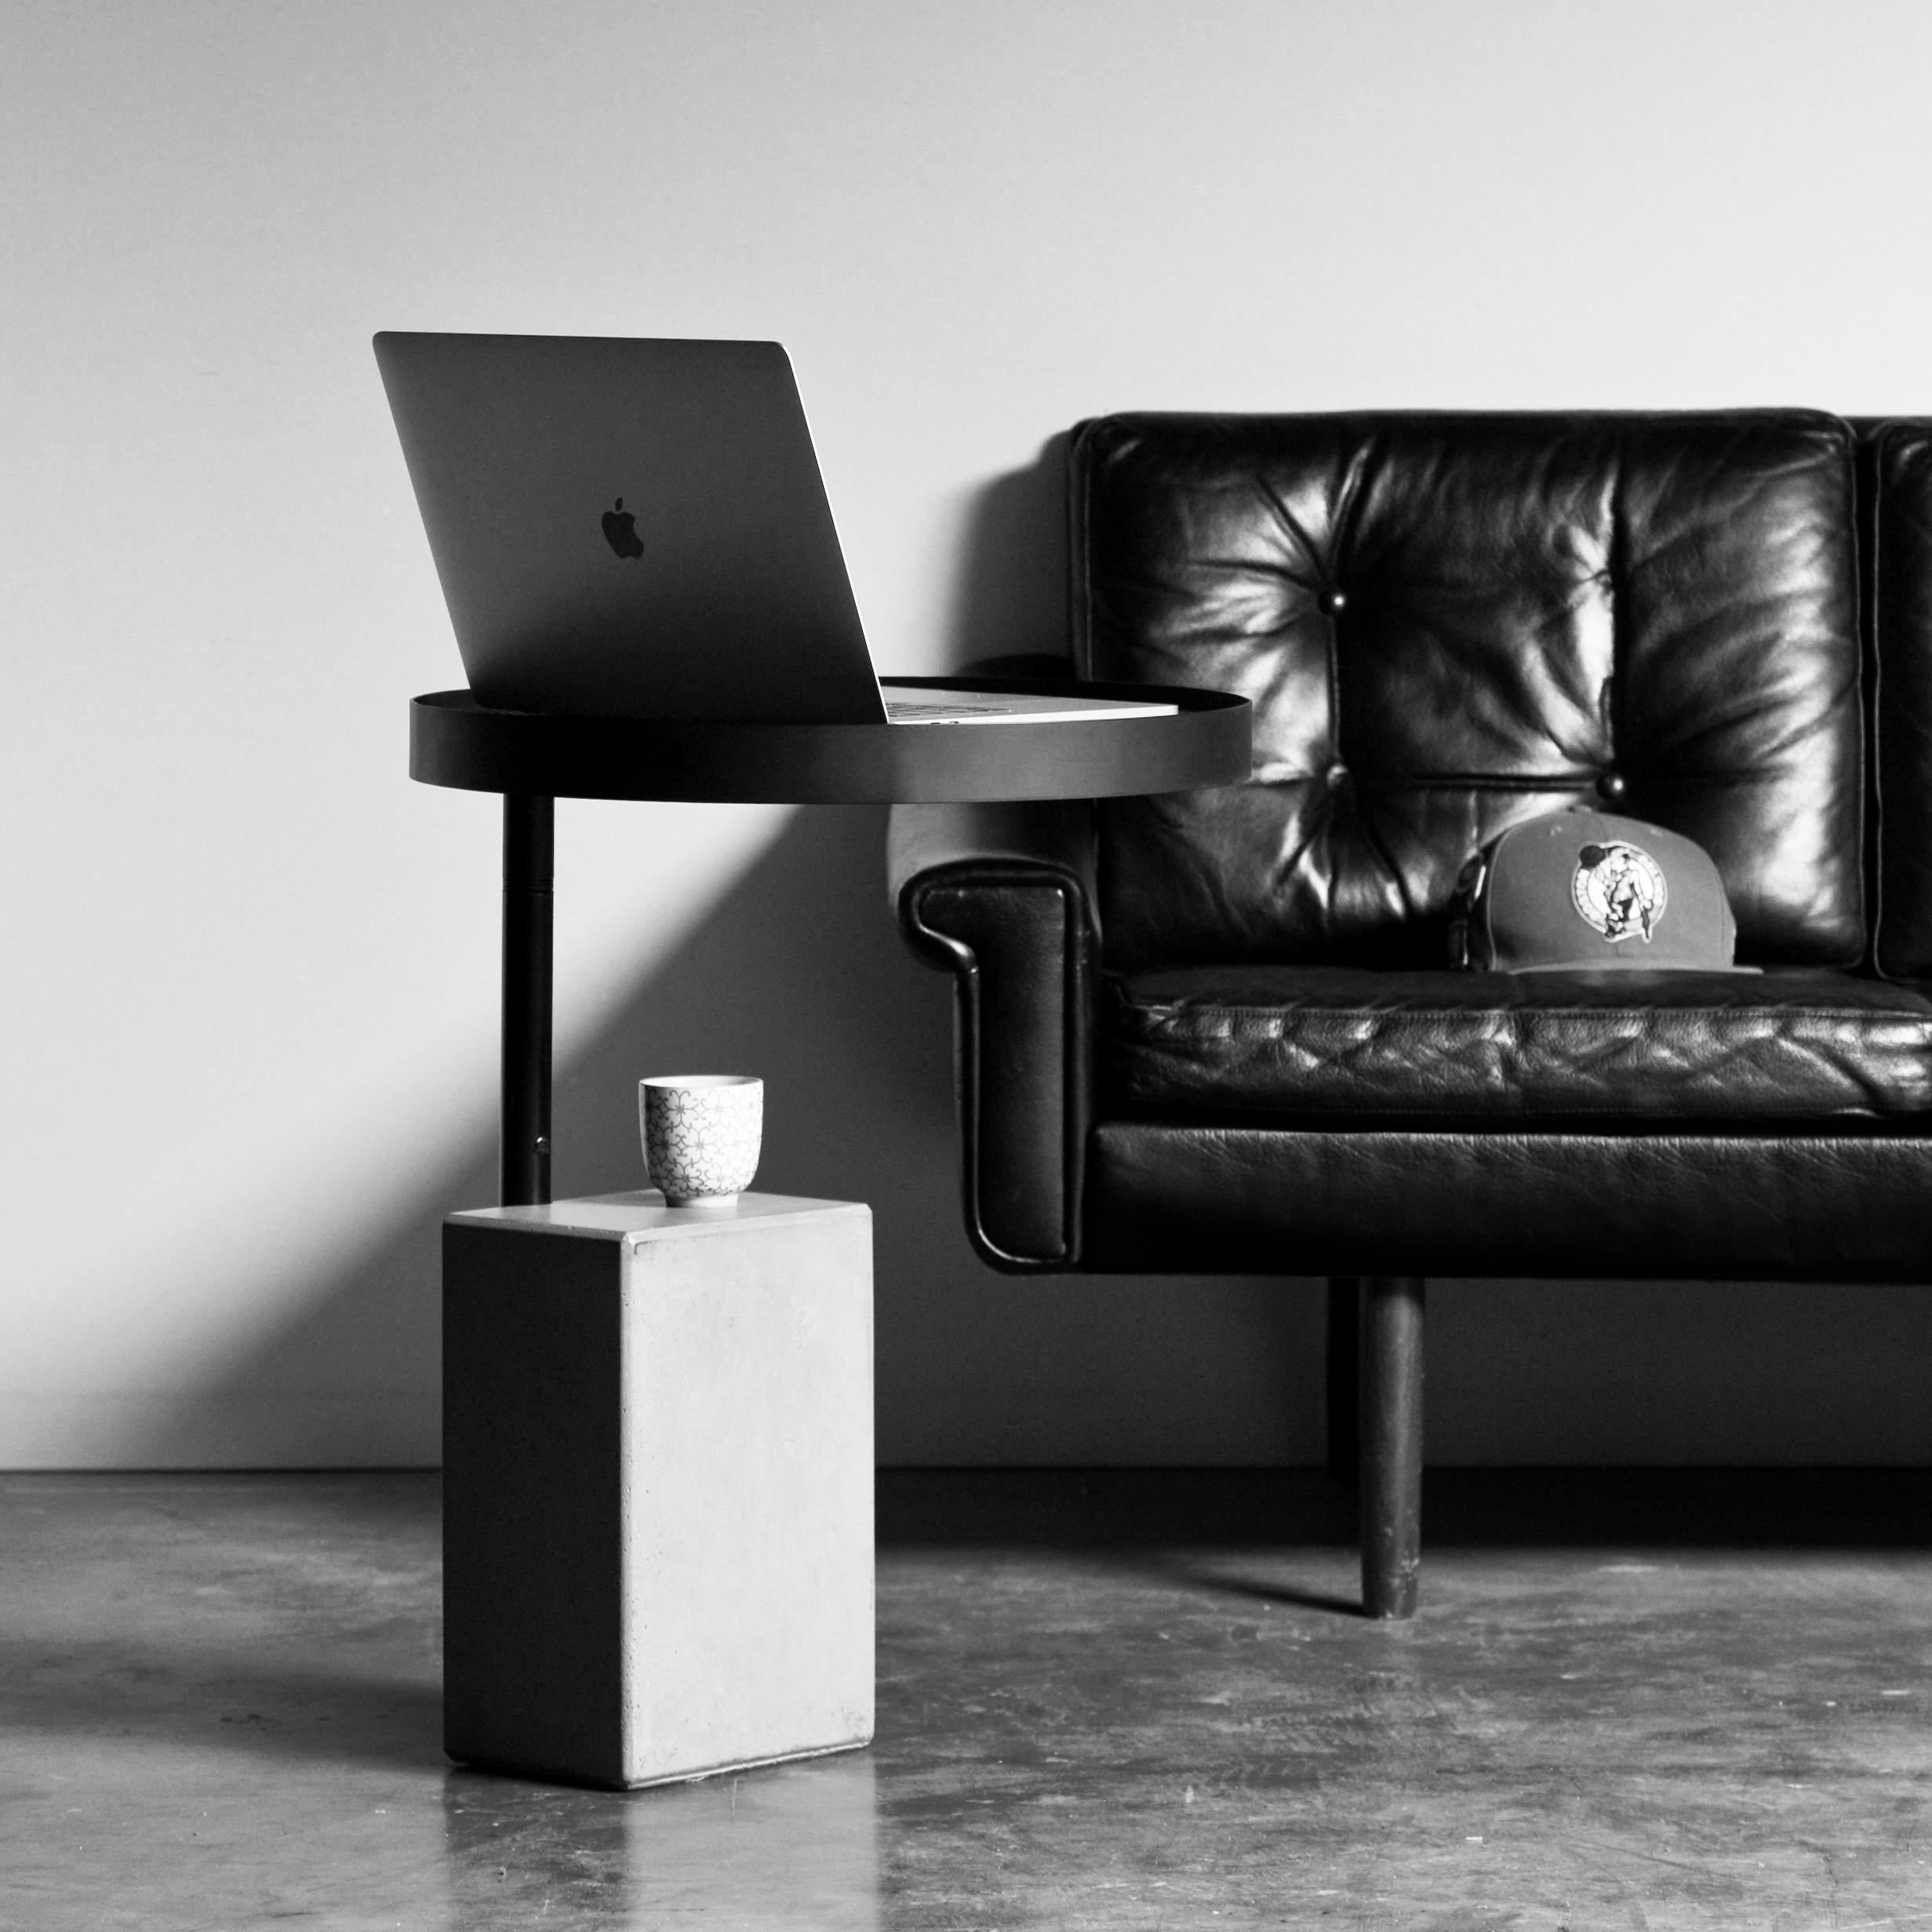 Unsere TWIST-Kollektion, entworfen von Alexandre Dubreuil, umfasst einen Beistelltisch, den idealen Begleiter für Ihre Couch, Ihren Sessel oder sogar Ihren Liegestuhl, da er für den Außenbereich geeignet ist. Das elegante, gelochte Metalltablett